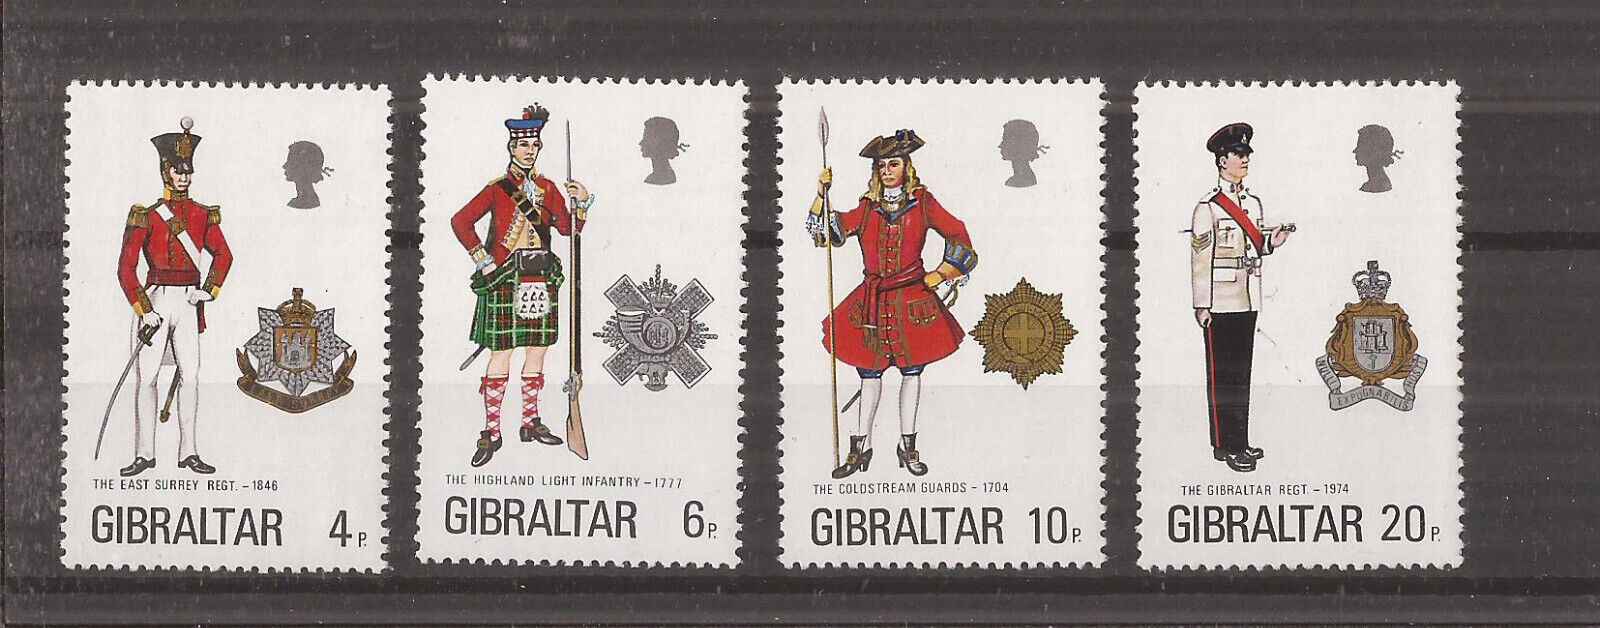 Gibraltar 1975 - uniforme militare (VII), serie neuzata